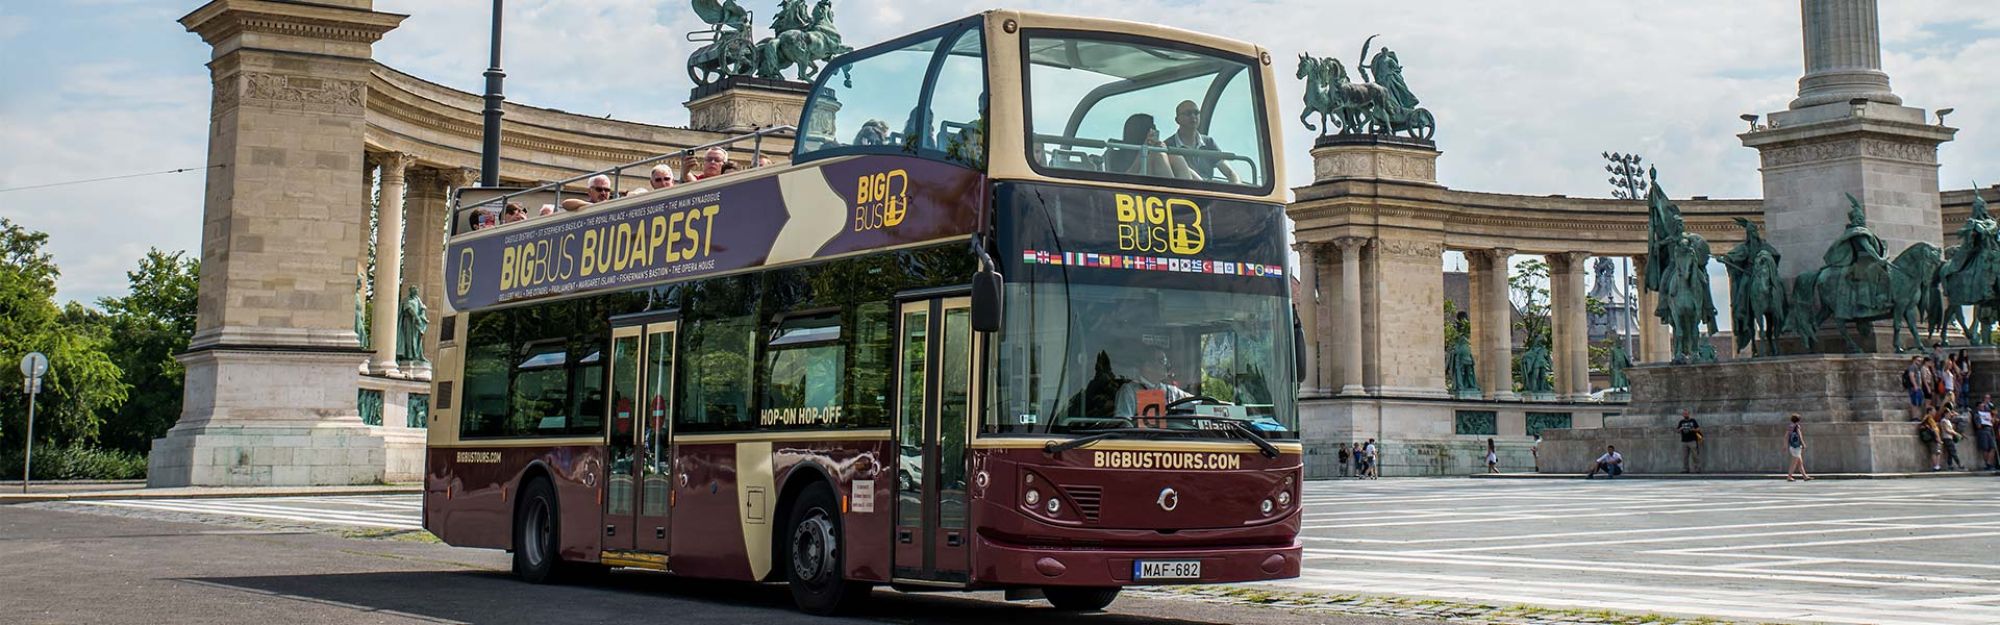 budapest city tour bus price